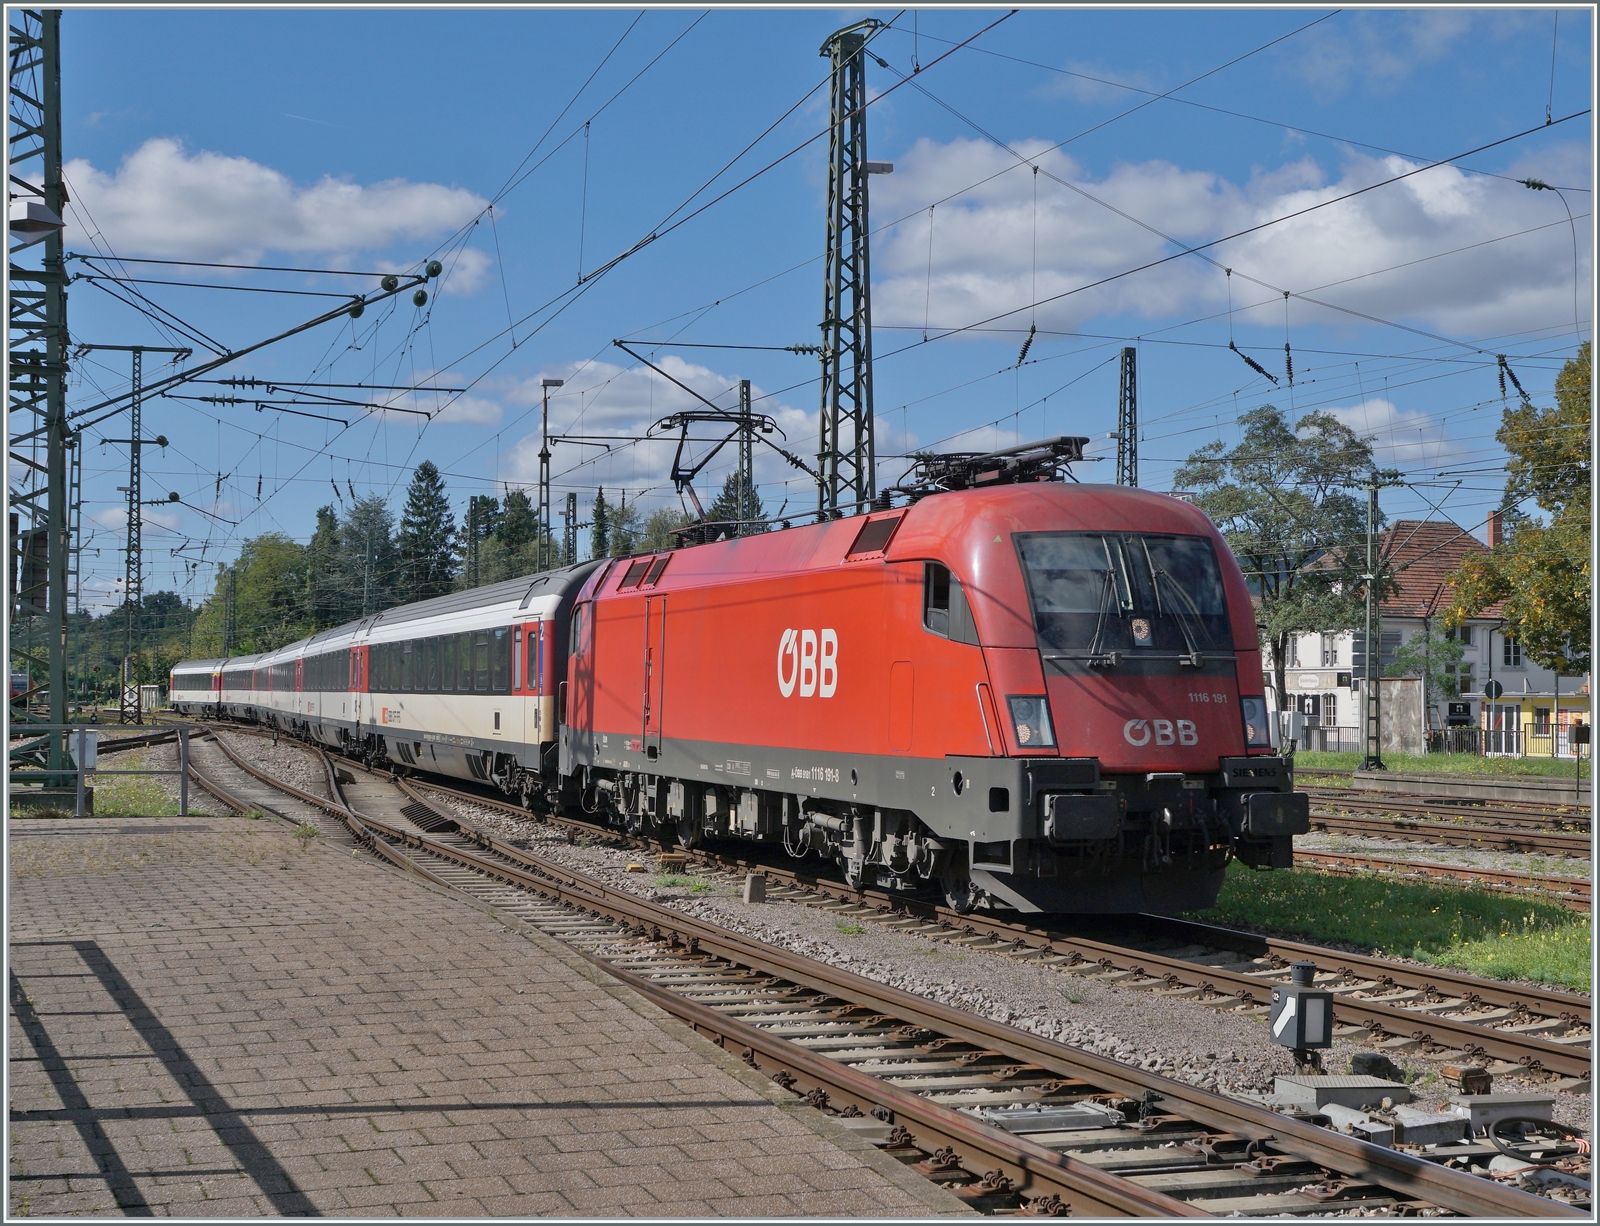 Die ÖBB 1116 191 erreicht mit ihrem IC von Stuttgart nach Zürich den Bahnhof Singen, wo er Zug von der SBB übernommen werden wird.

19. September 2022